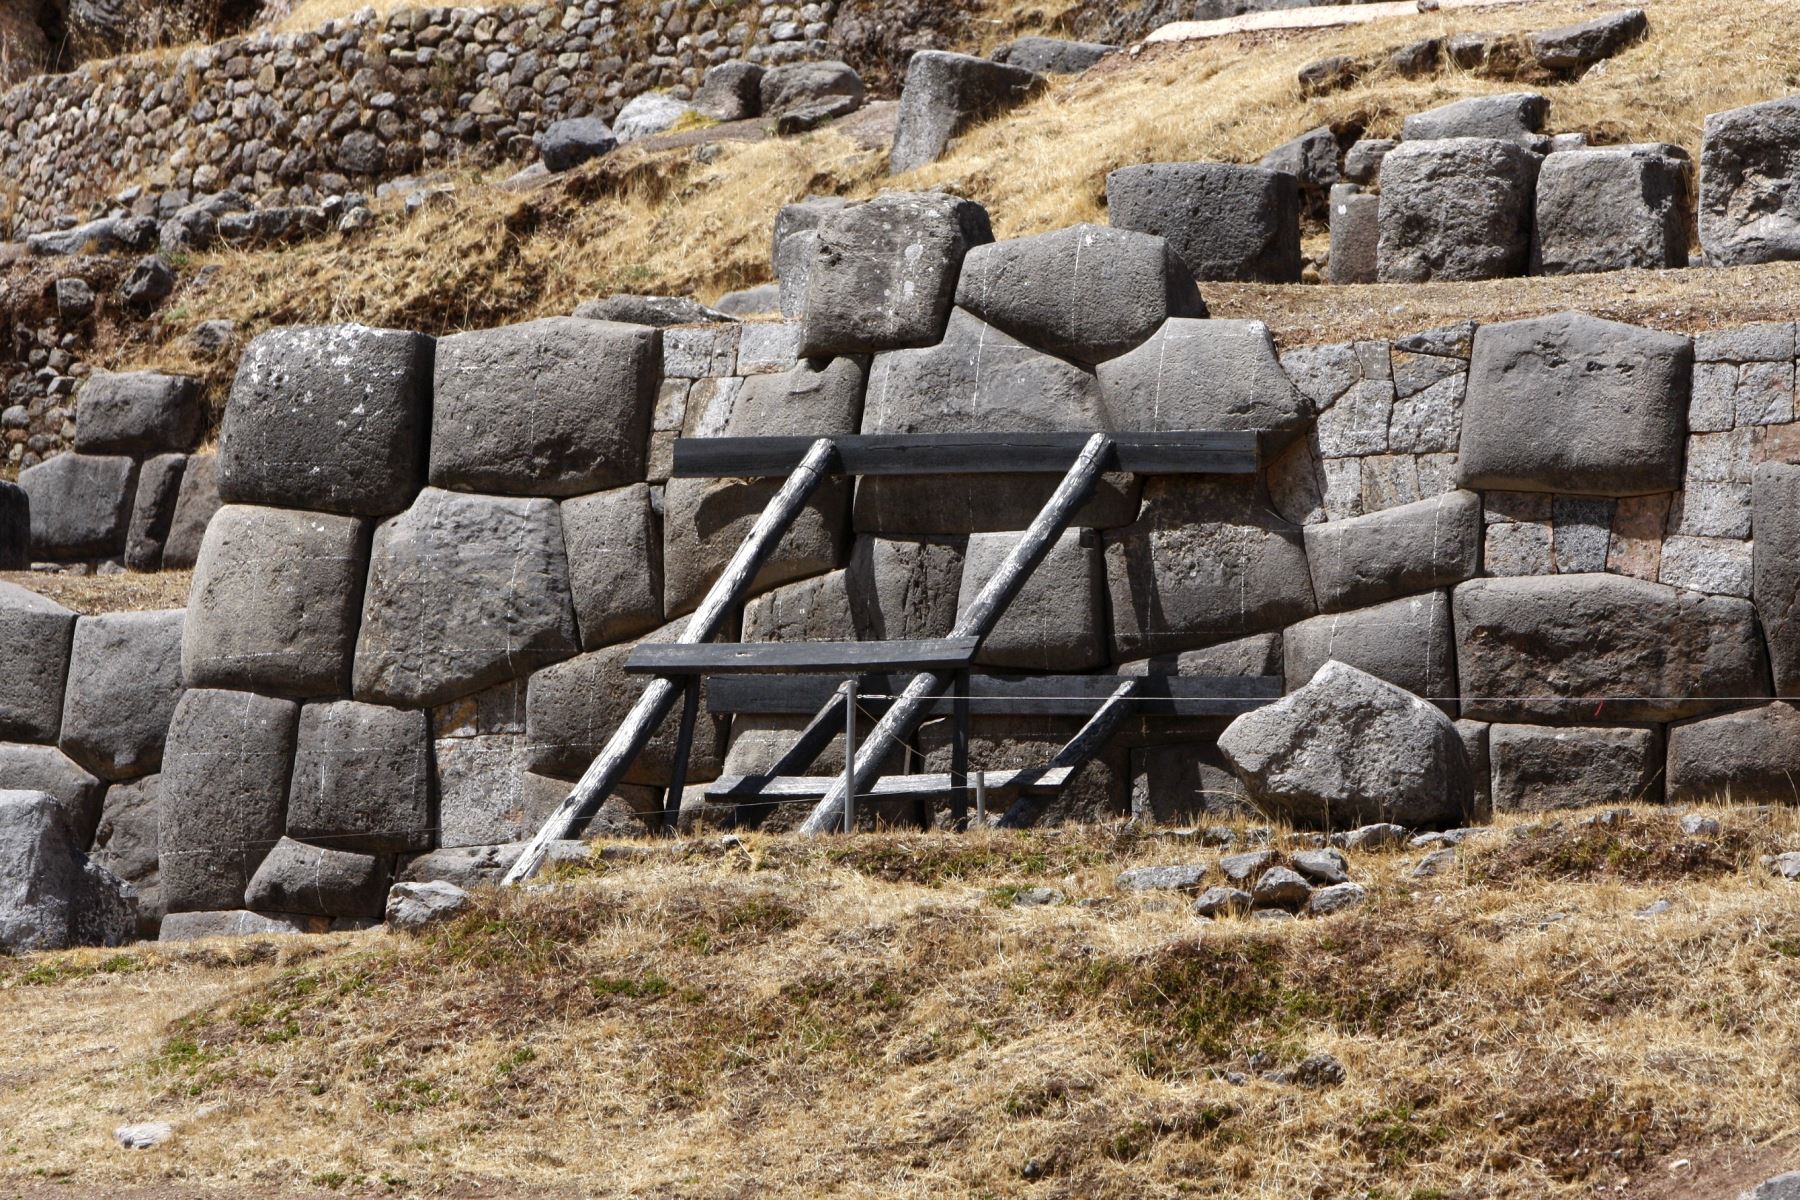 El Parque Arqueológico Sacsayhuamán  cuenta con sitios arqueológicos, entre los cuales destacan Qenqo, Tambomachay, Kallachaca, Patallaqta y Amaro–Markahuasi. Foto: ANDINA/Percy Hurtado